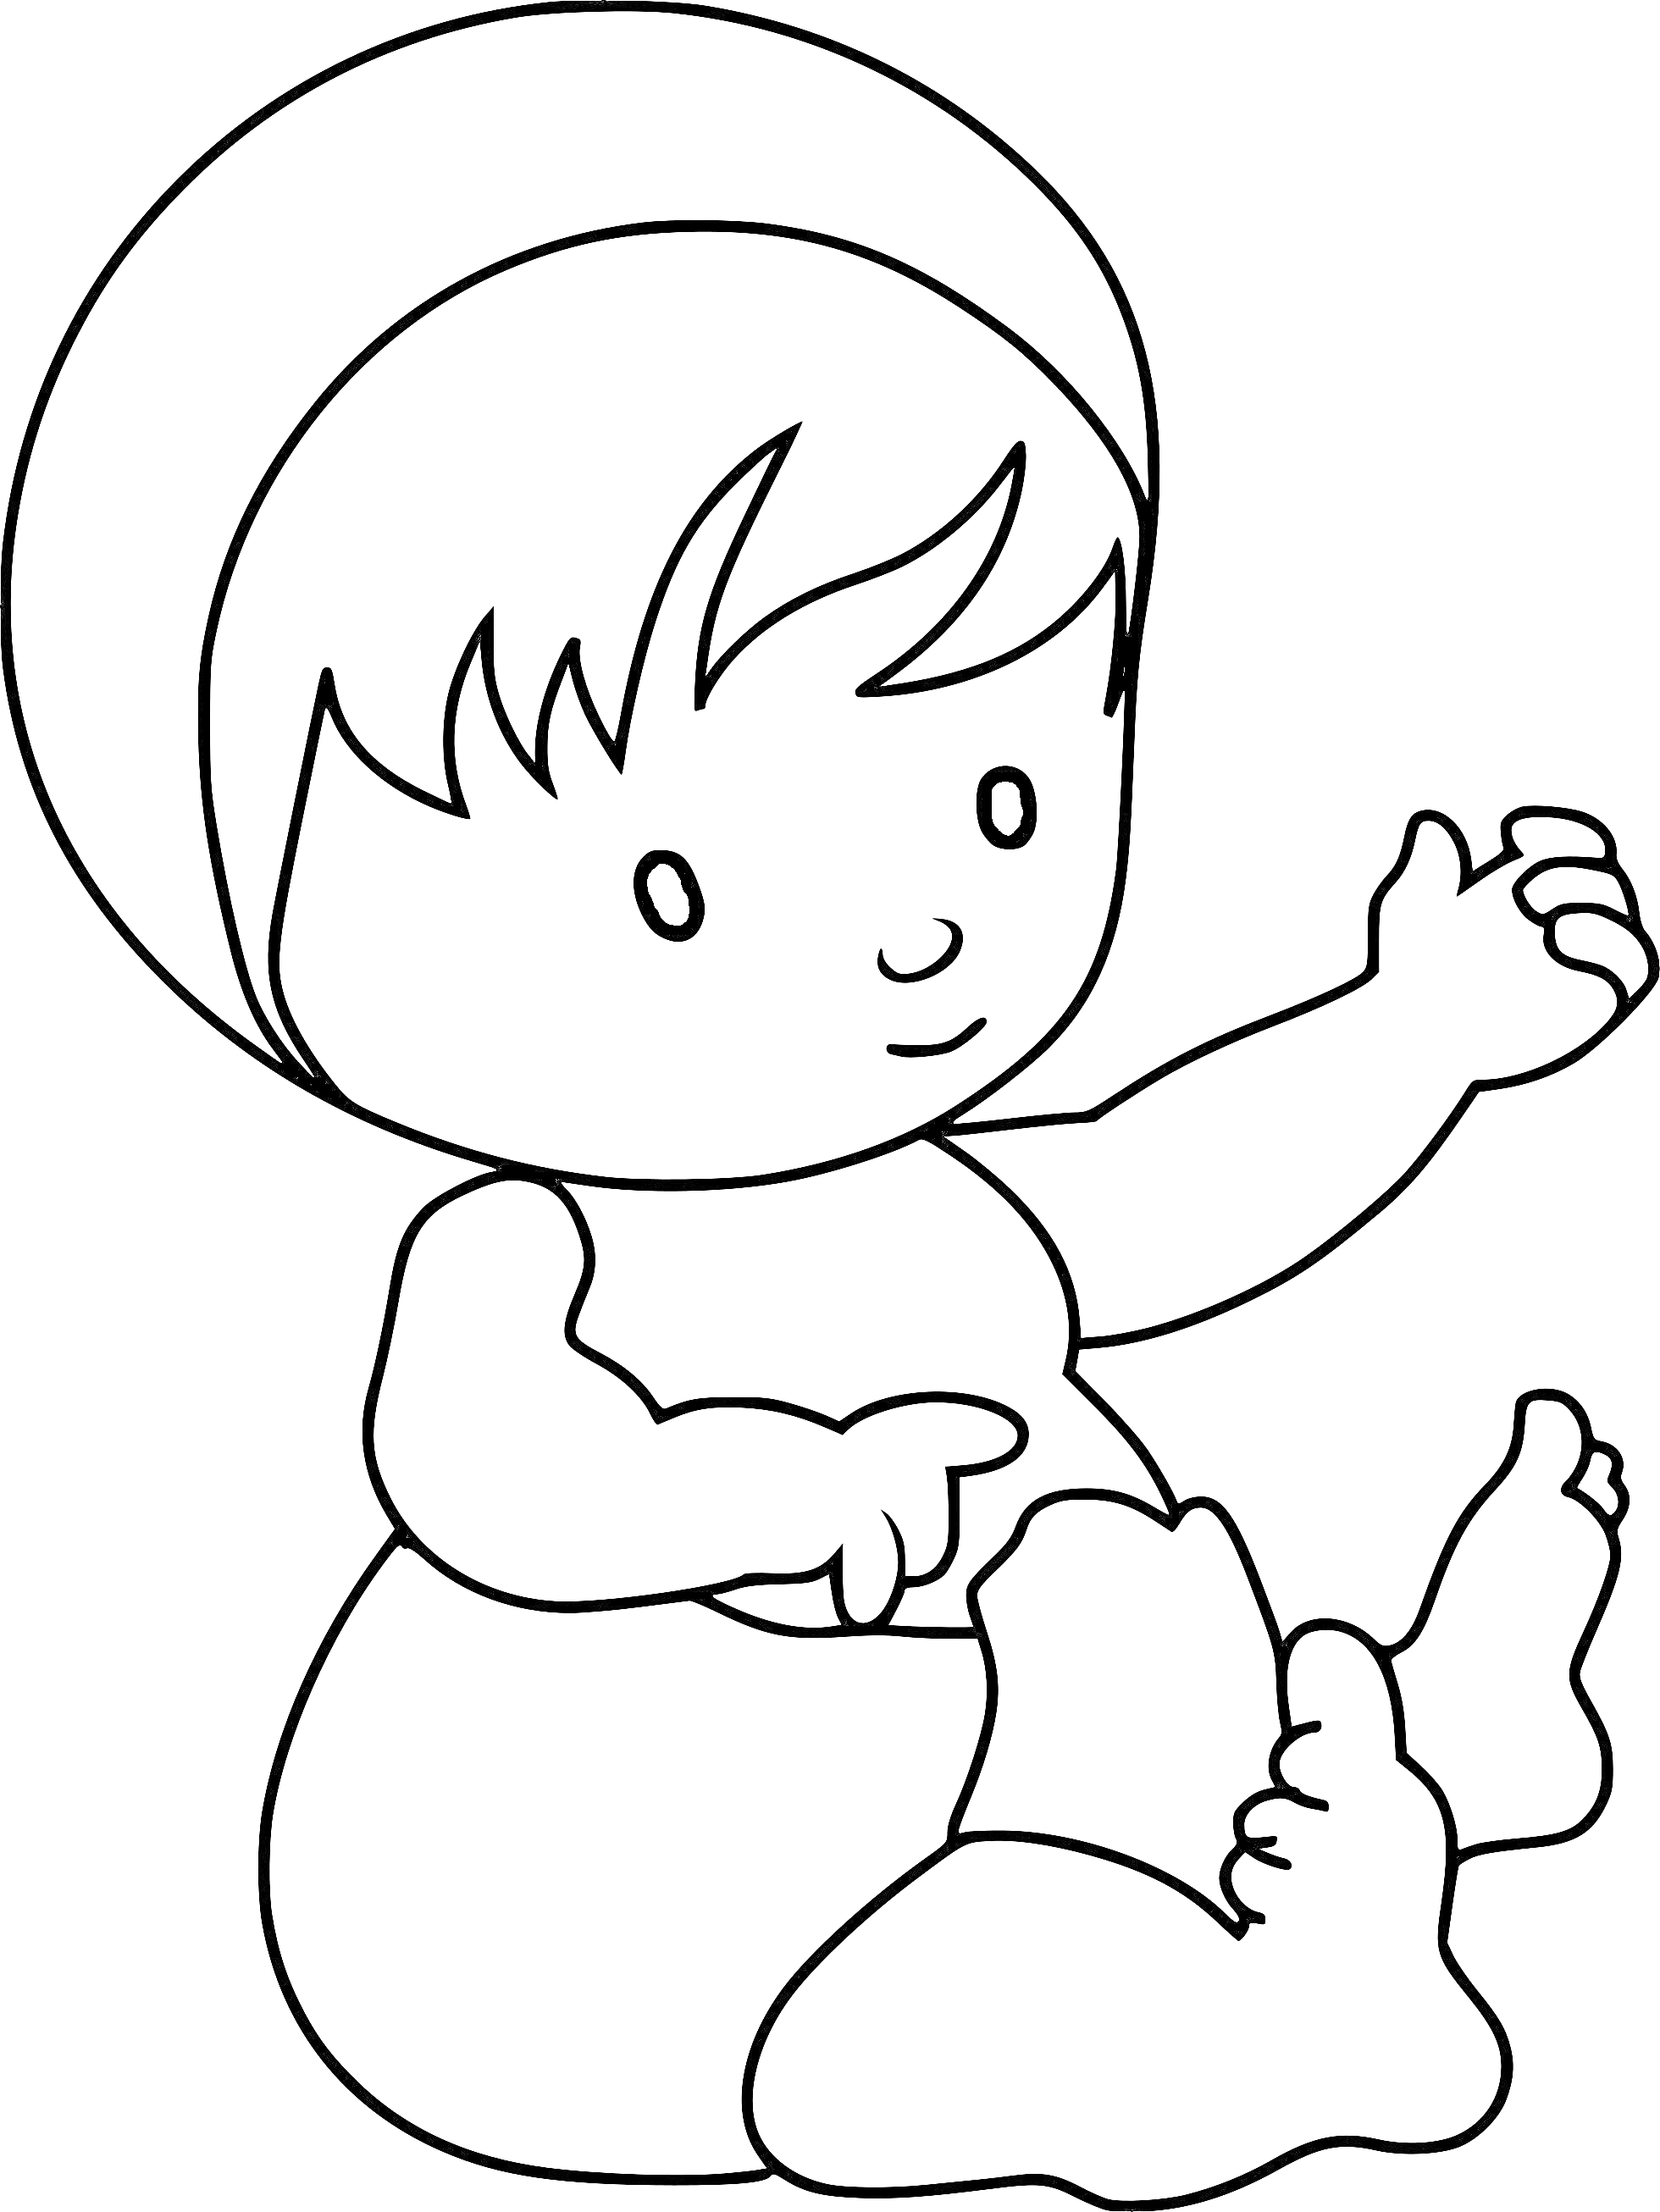 Раскраска Пупсик в чепчике с поднятой рукой и согнутыми ногами